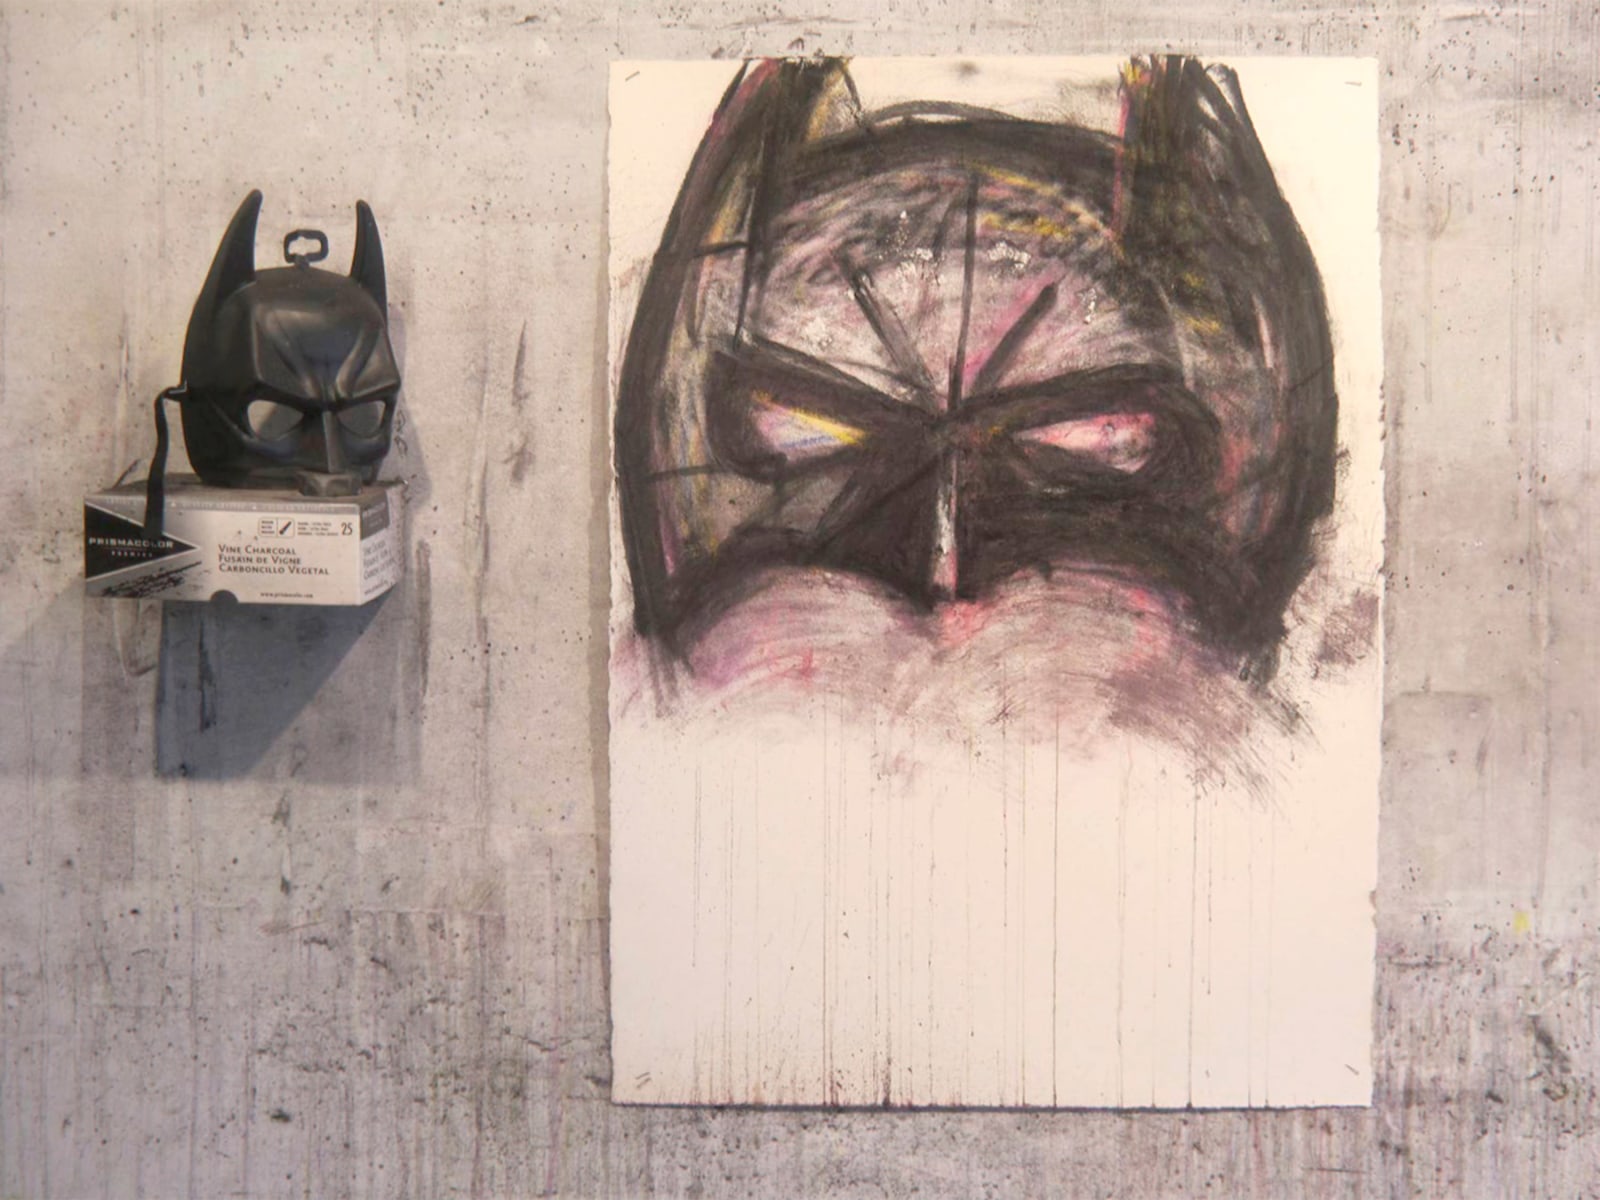 Batman drawing by Pensato in progress, 2013.